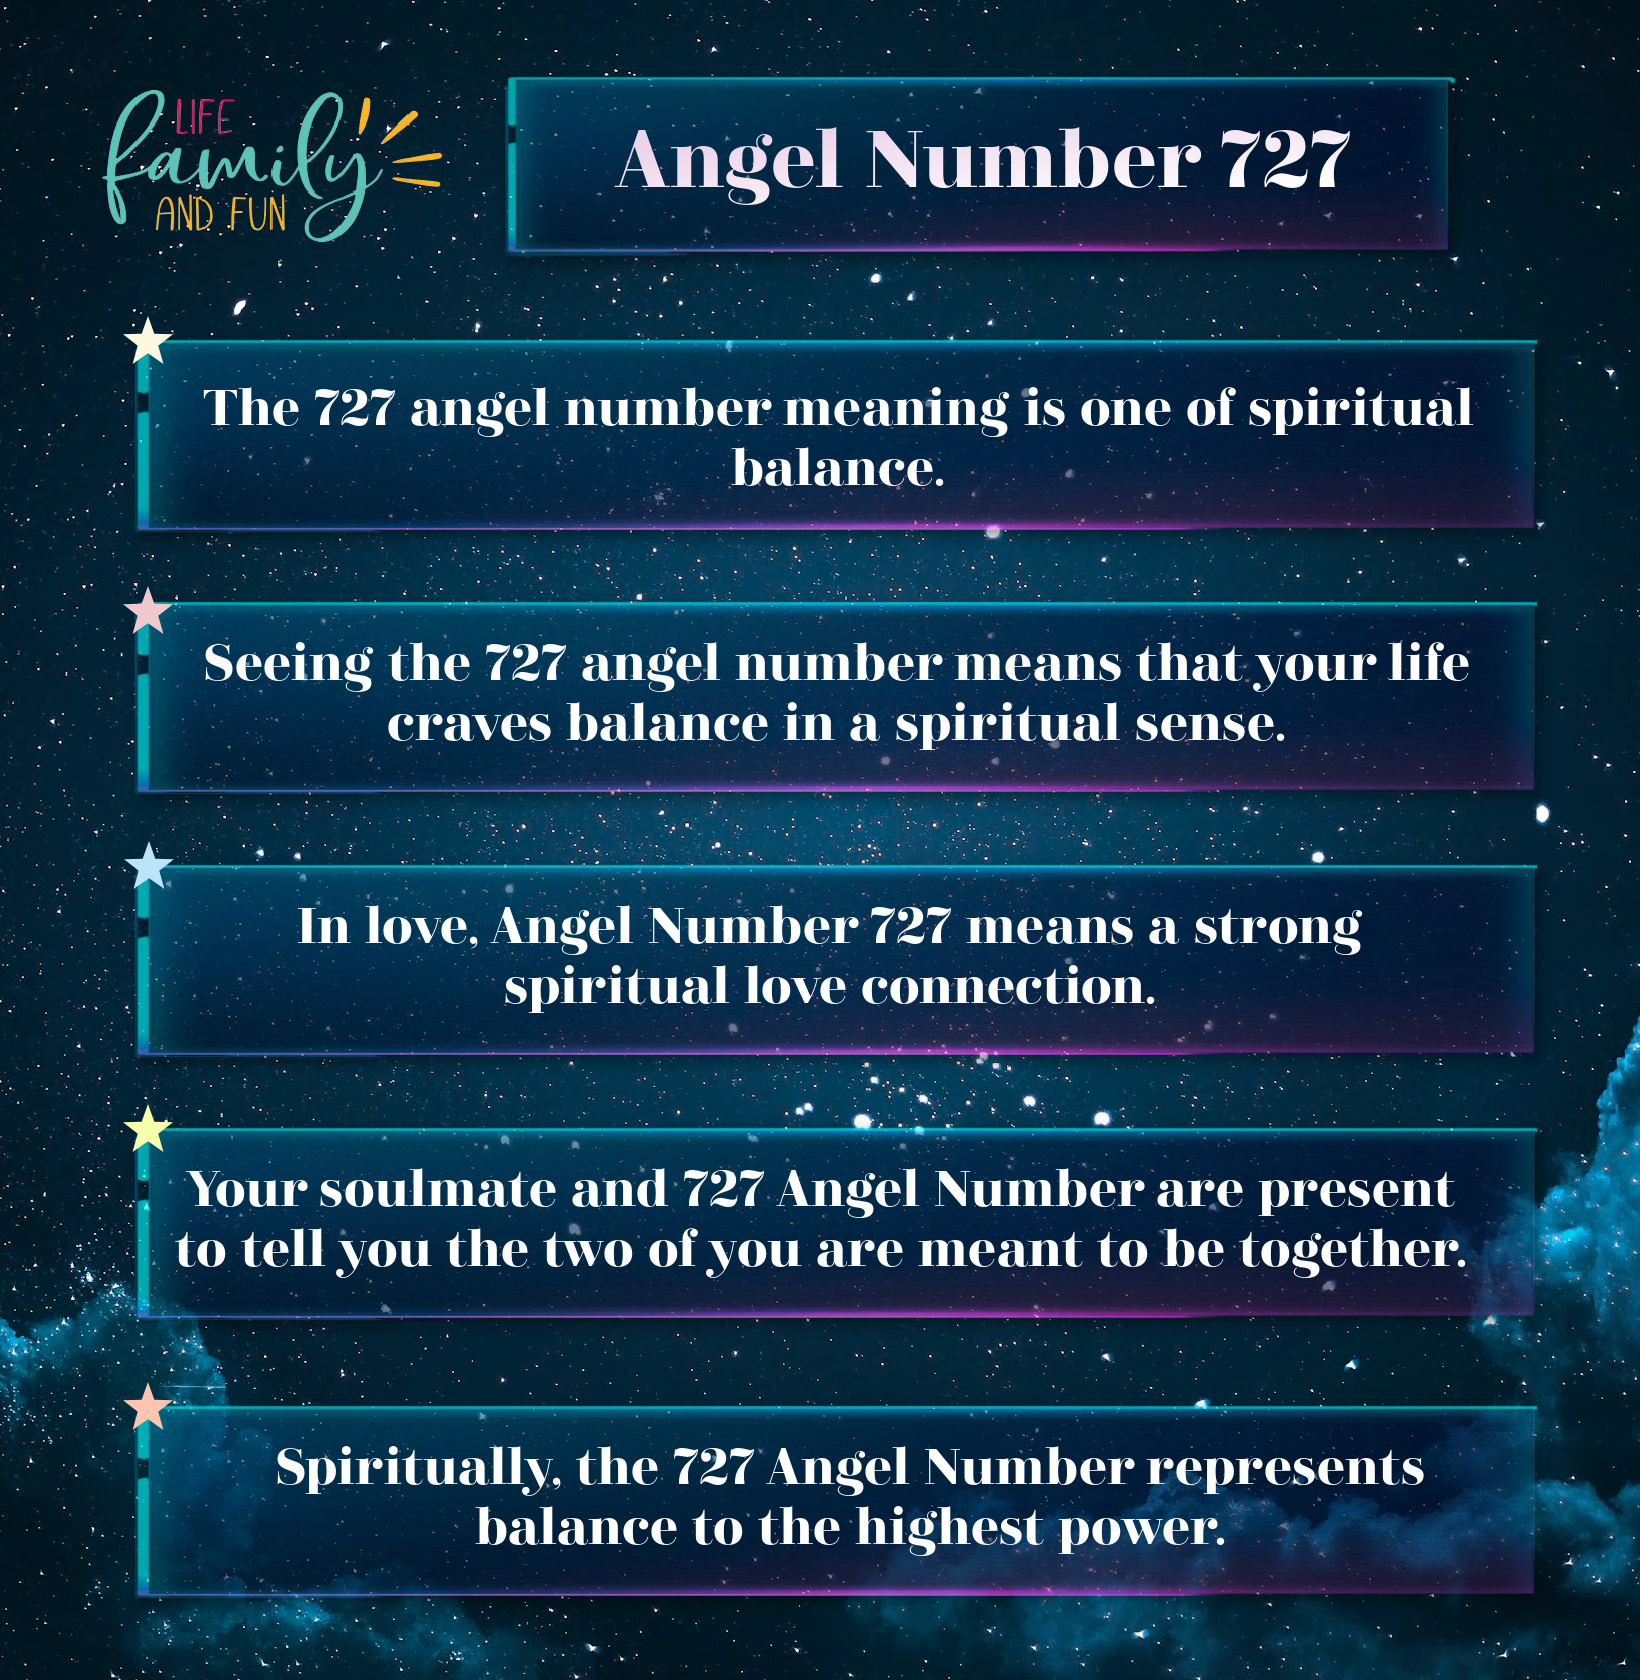 Angel Number 727